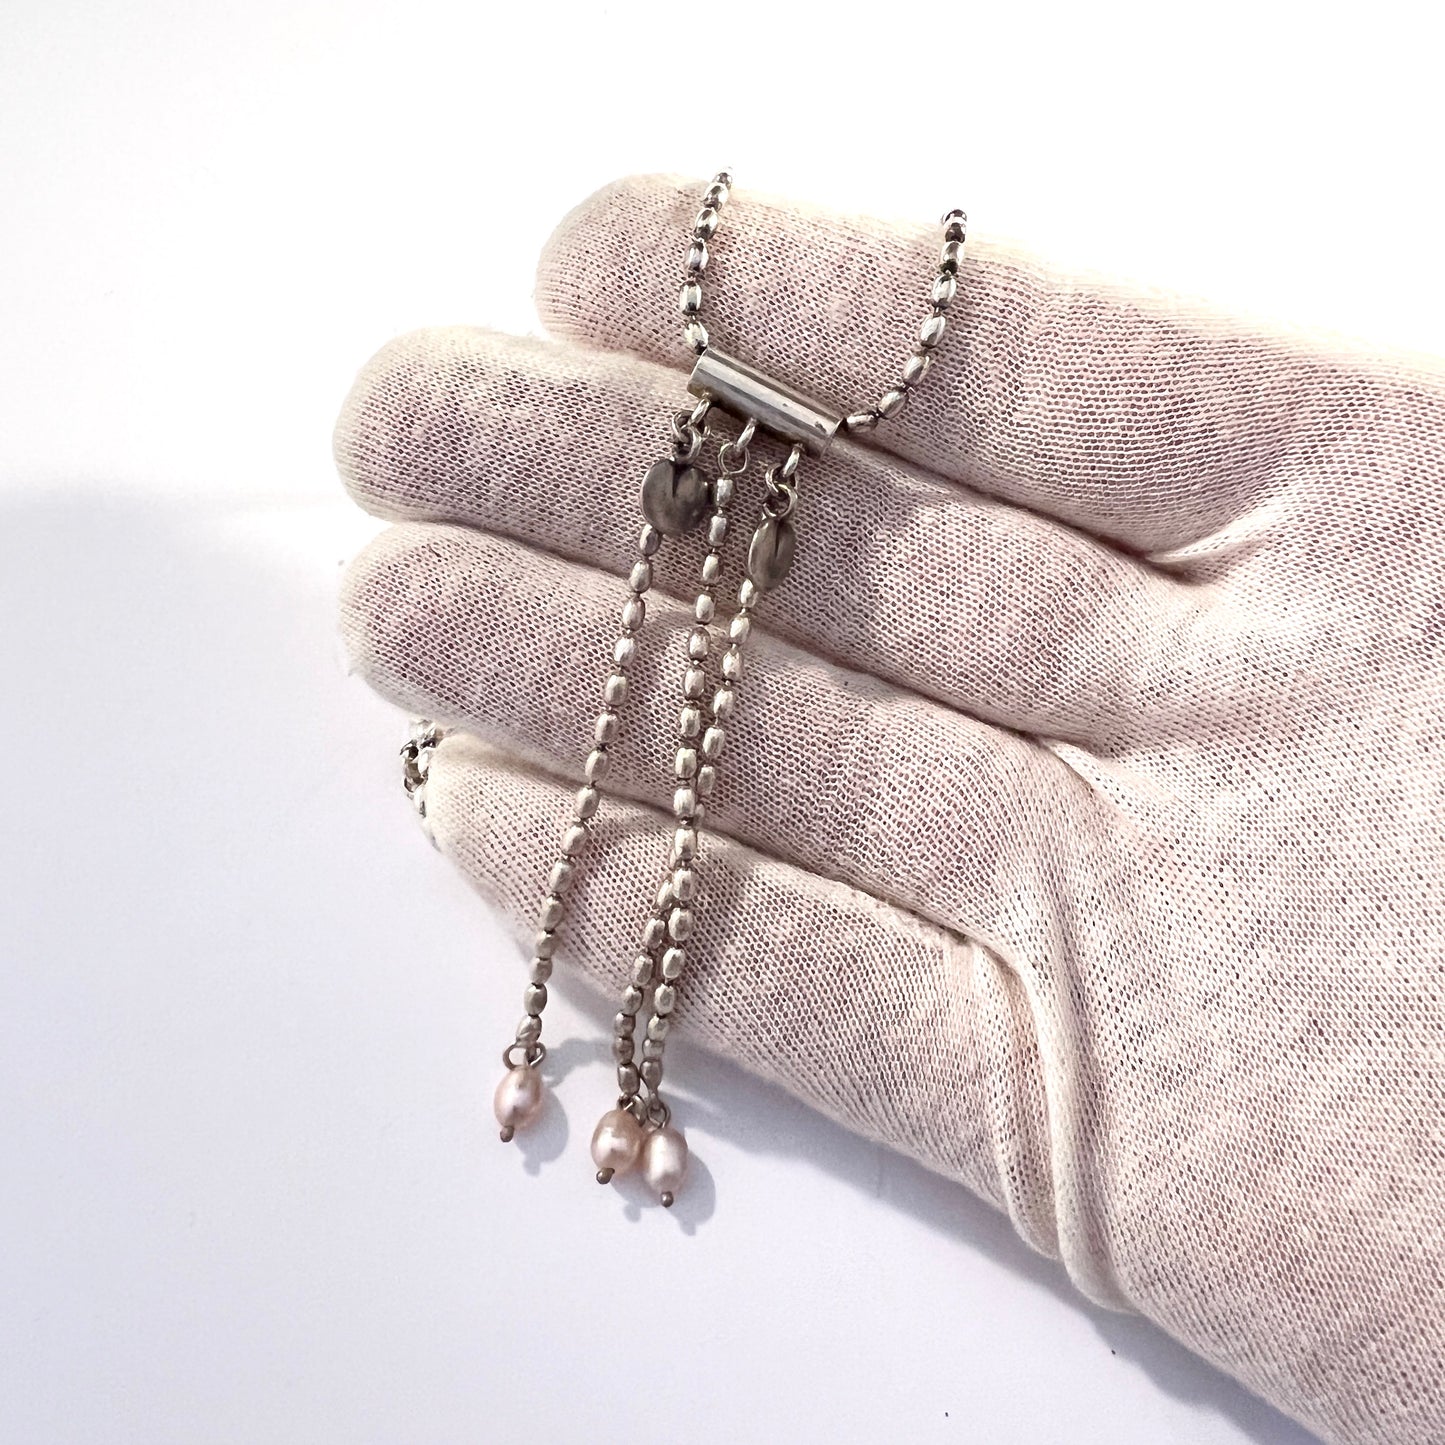 Kalevala Koru, Finland. Vintage Sterling Silver Pink Pearl Heart Pendant Necklace.